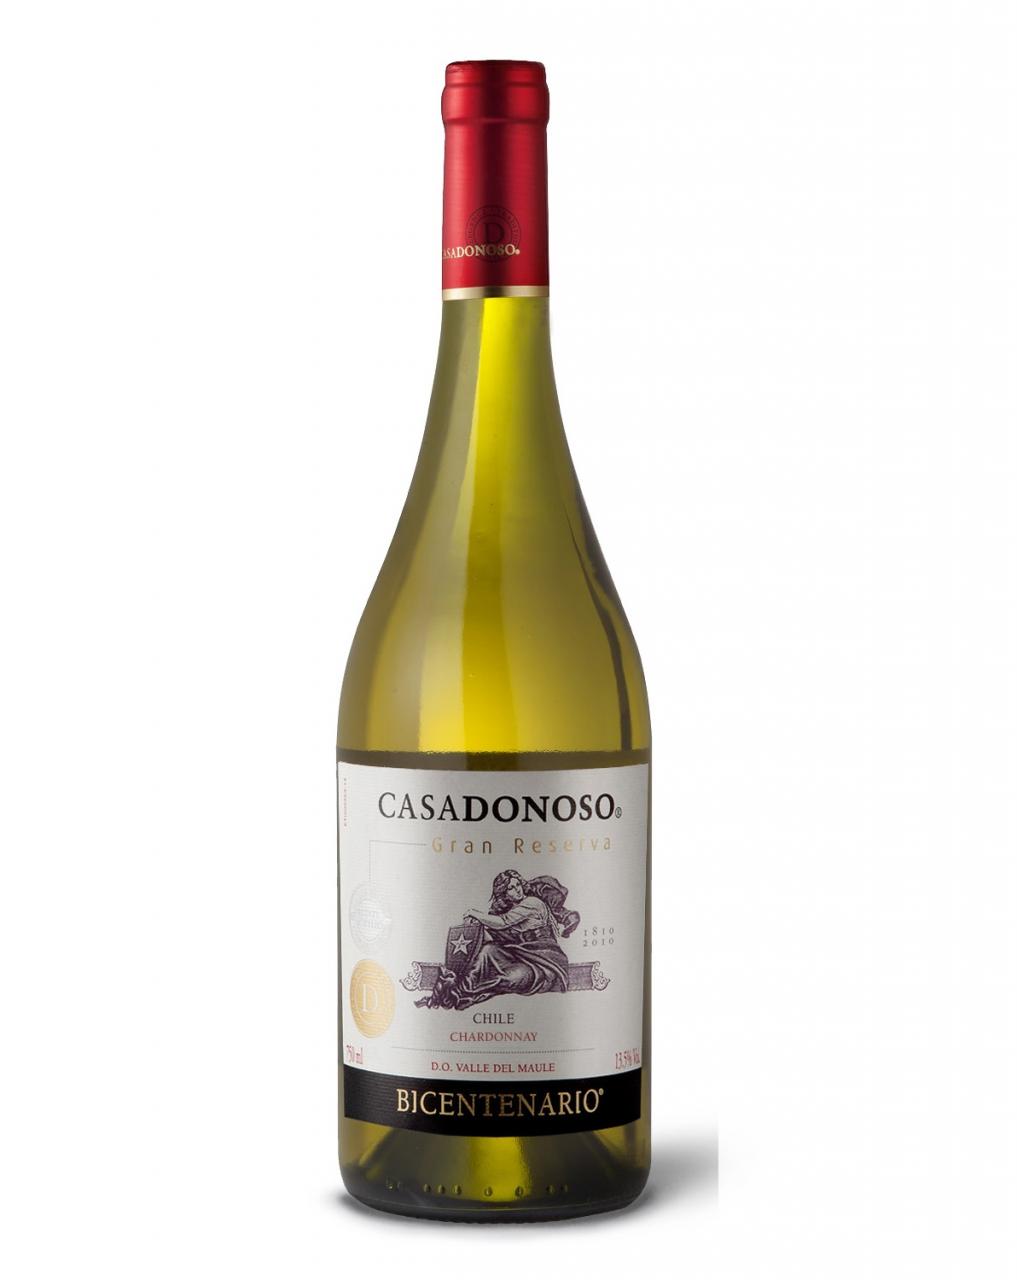 Vang Chile Casadonoso Gran Reserva Chardonnay